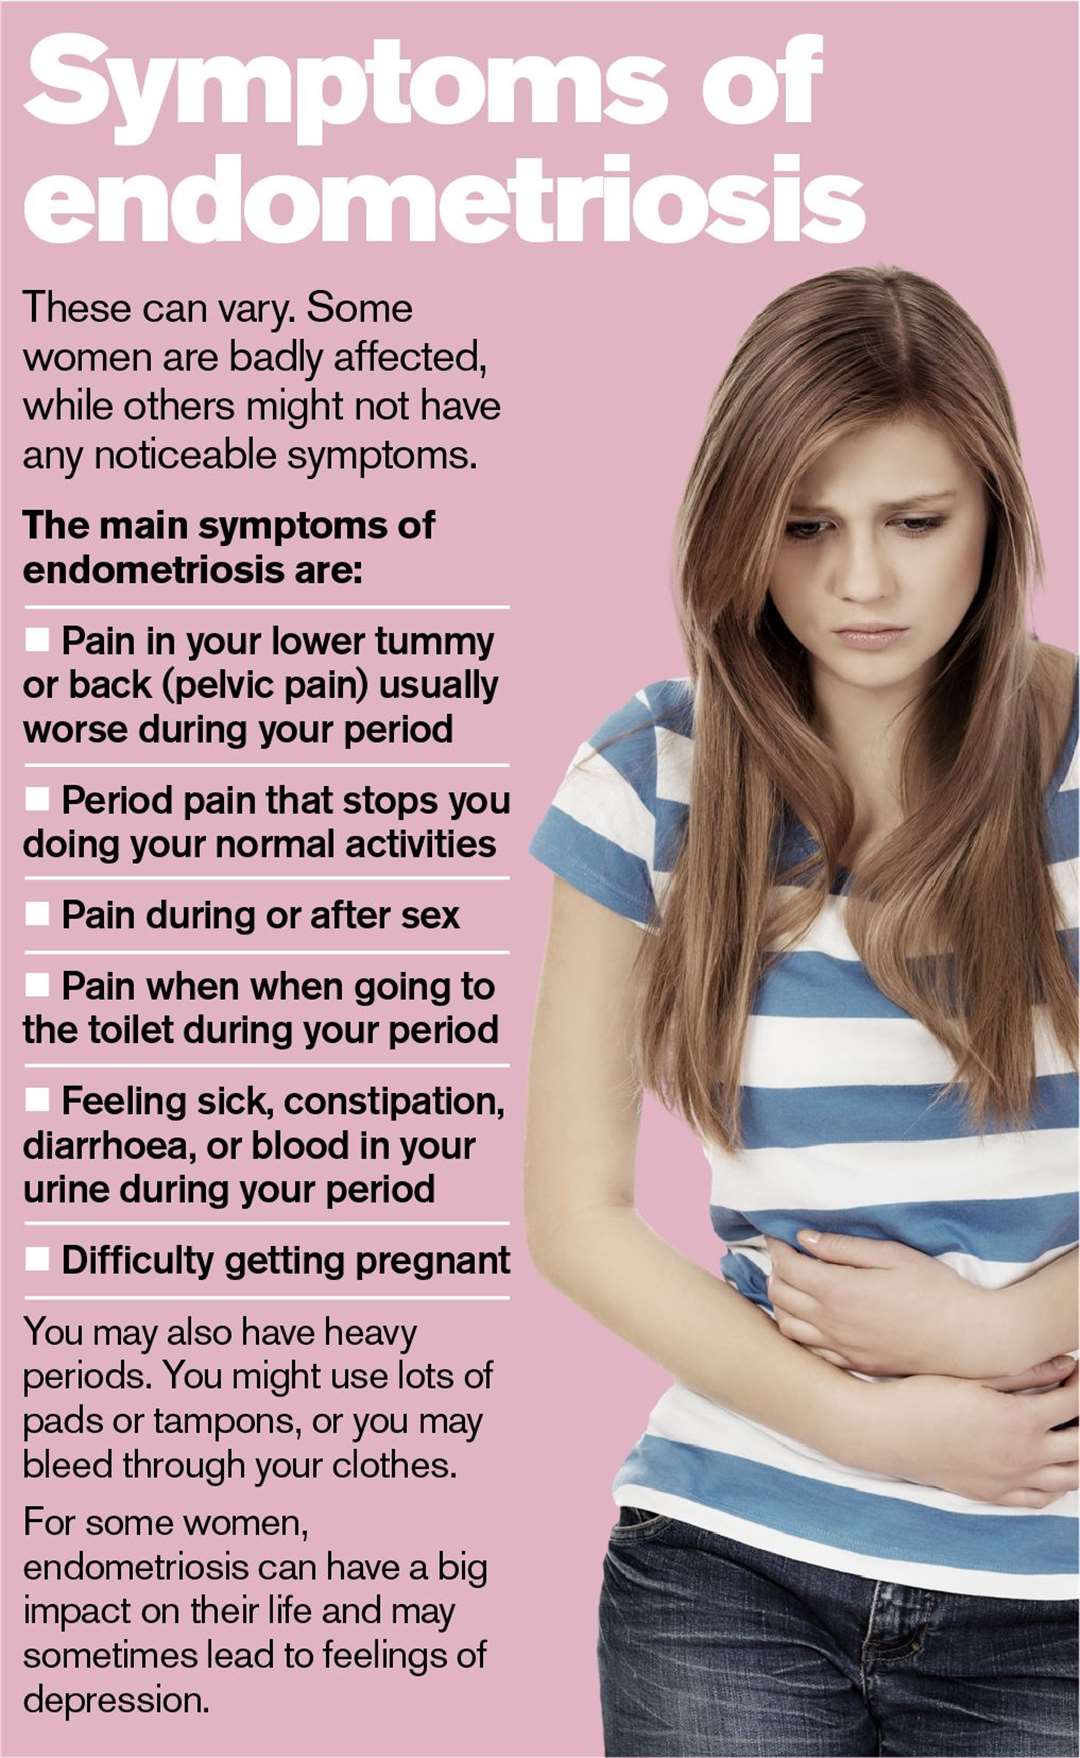 Symptoms of Endometriosis. Source: NHS